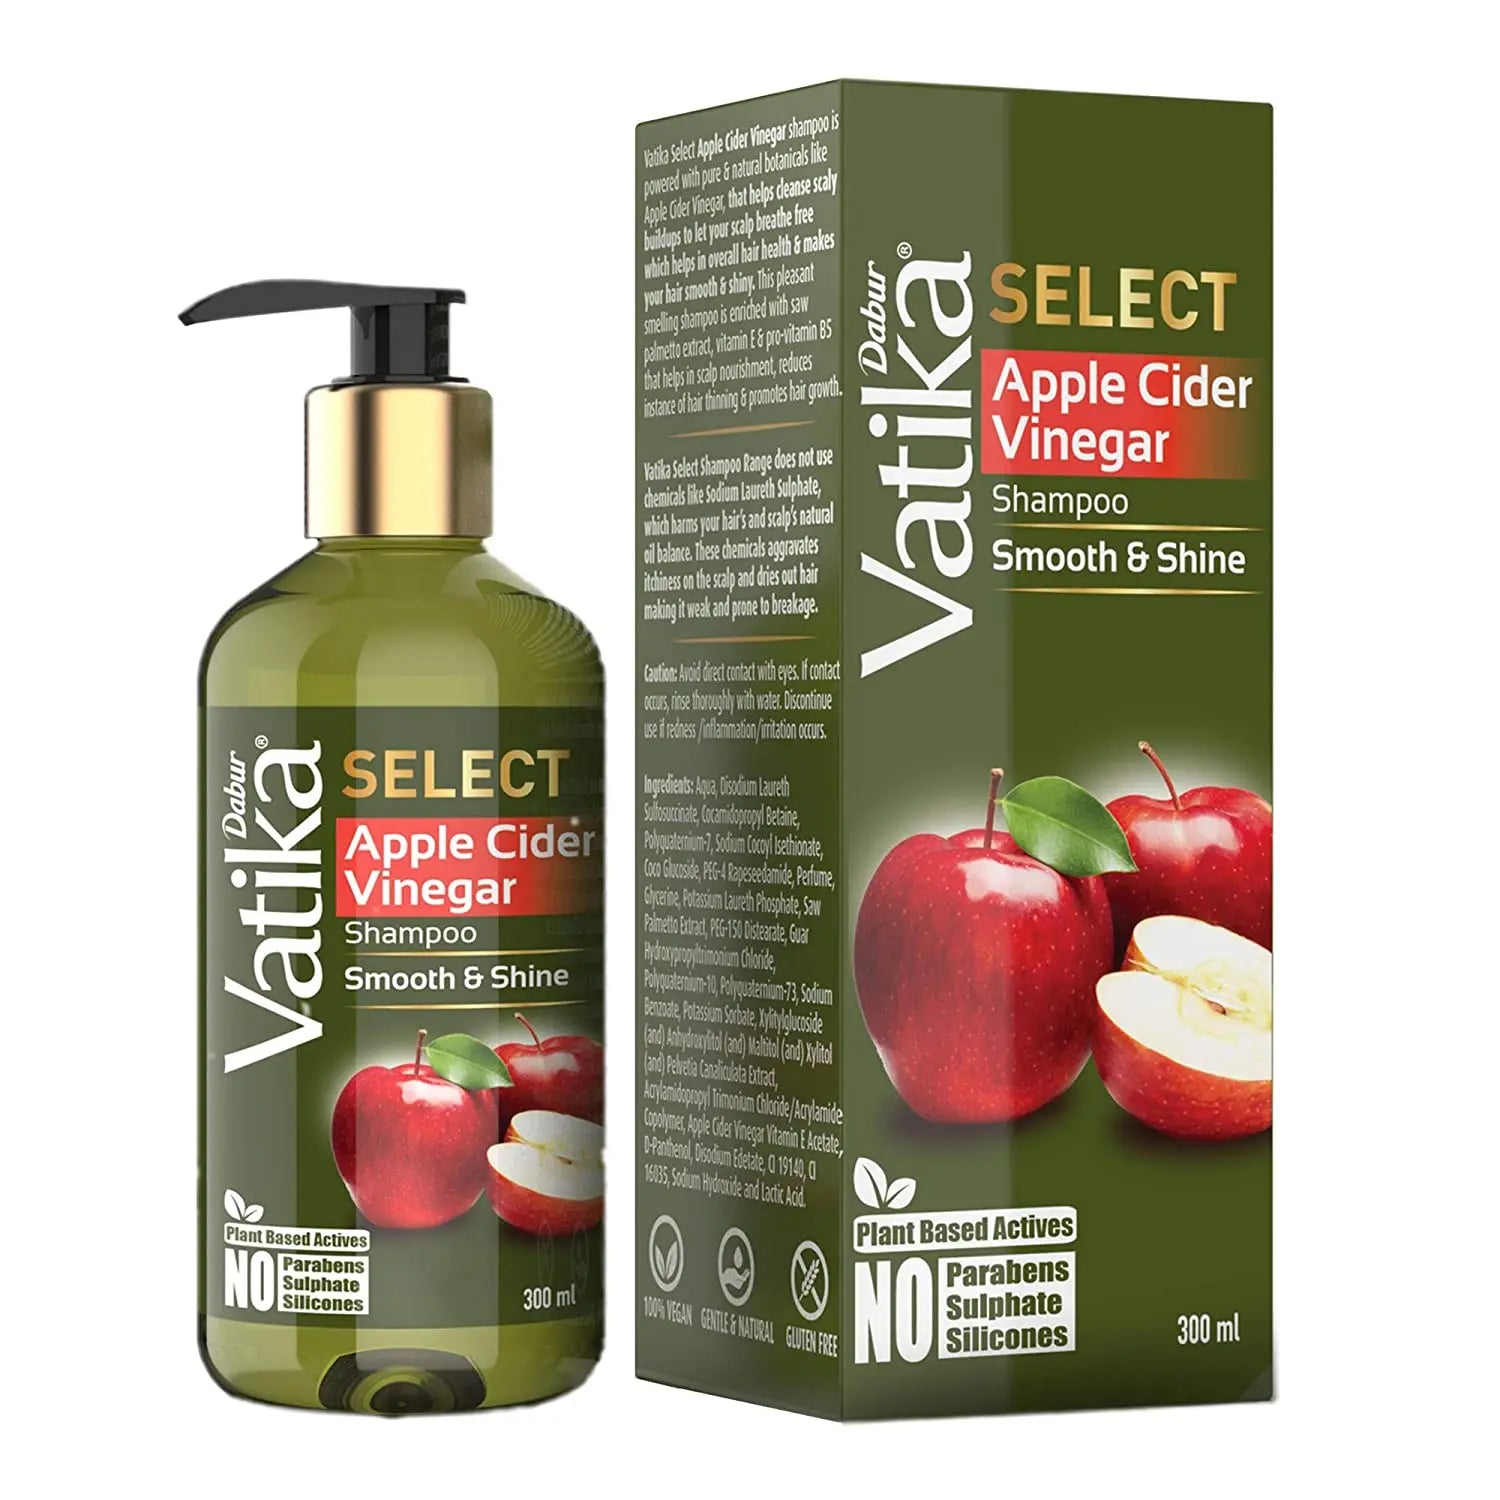 Dabur Vatika Select Apple Cider Vinegar Shampoo 300ml Dabur